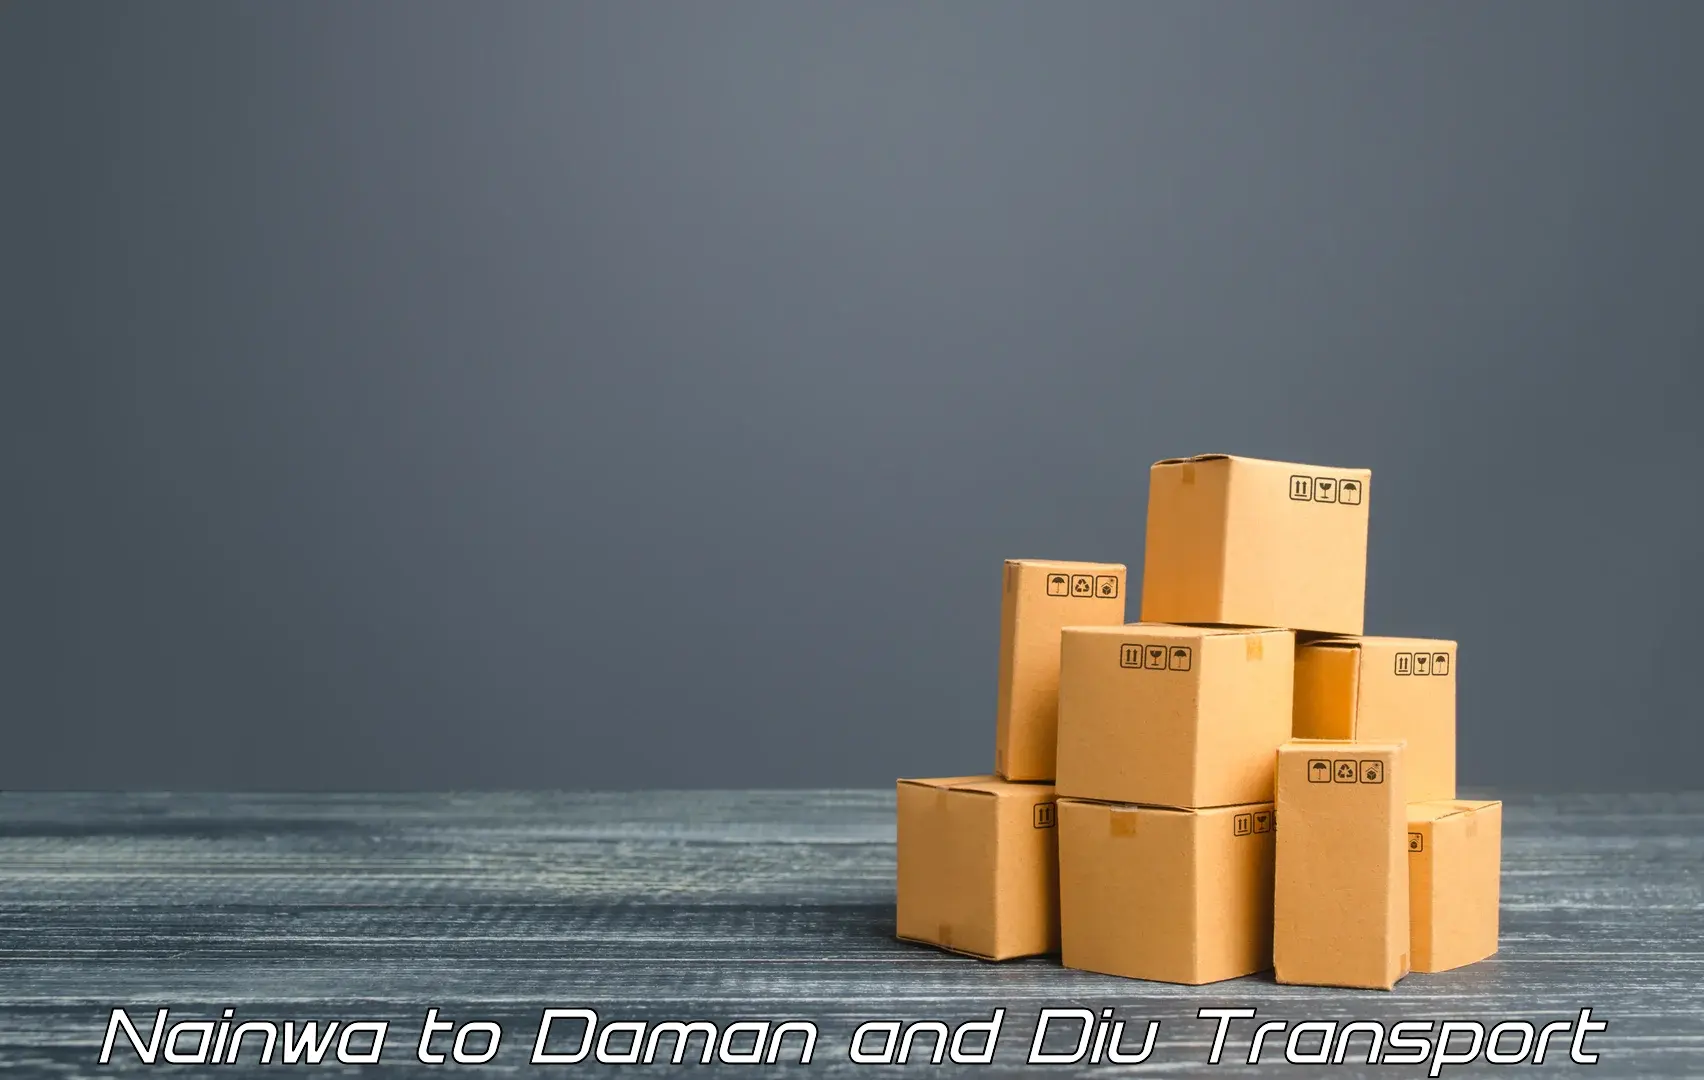 Cargo transportation services Nainwa to Daman and Diu